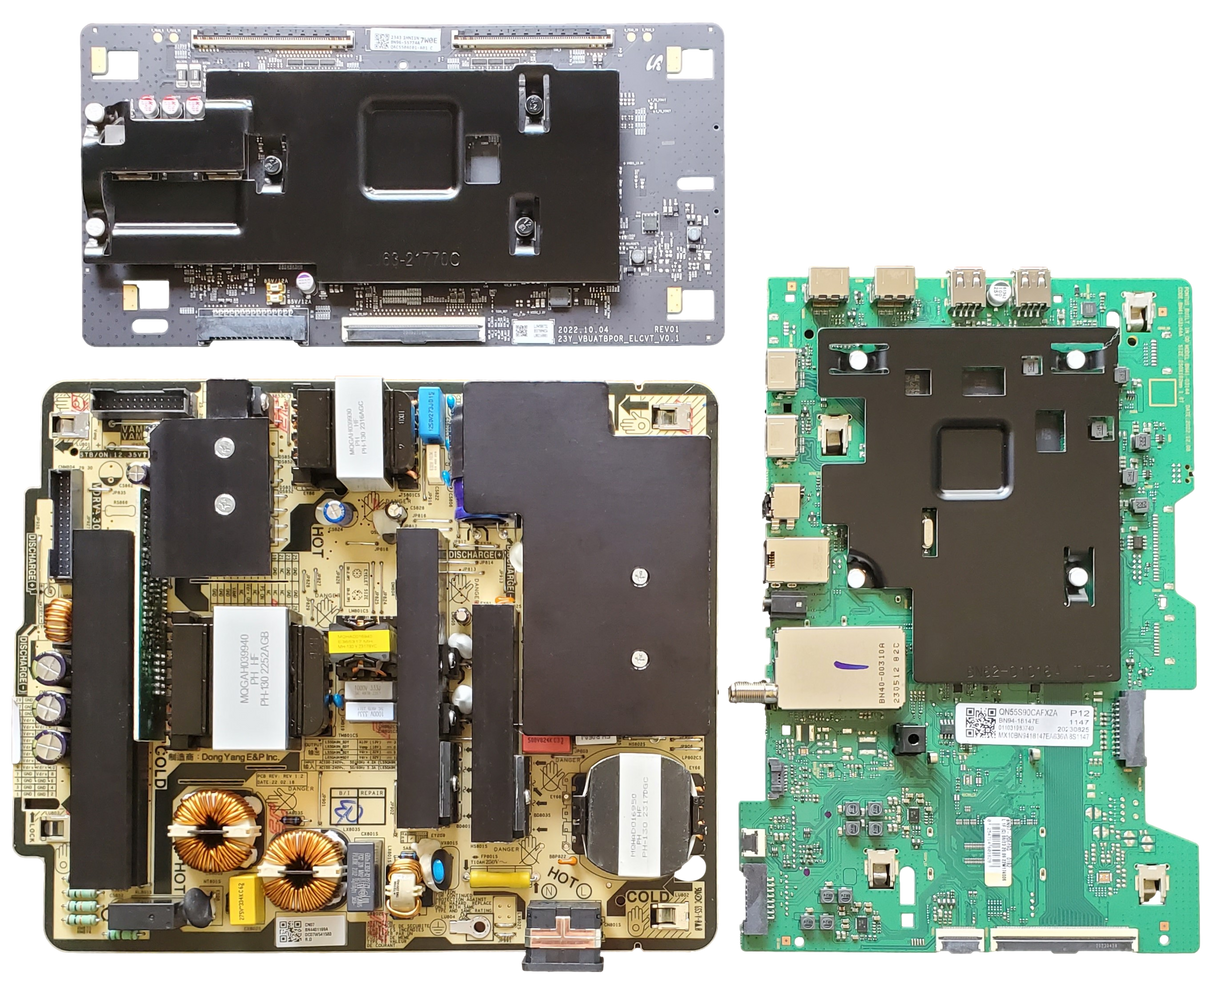 QN55S90CAFXZA Samsung TV Repair Kit, QN55S95BDFXZA, BN94-18147E Main Board, BN44-01169A Power Supply, BN96-55774A T-Con, QN55S90CAFXZA, QN55S95BDFXZA